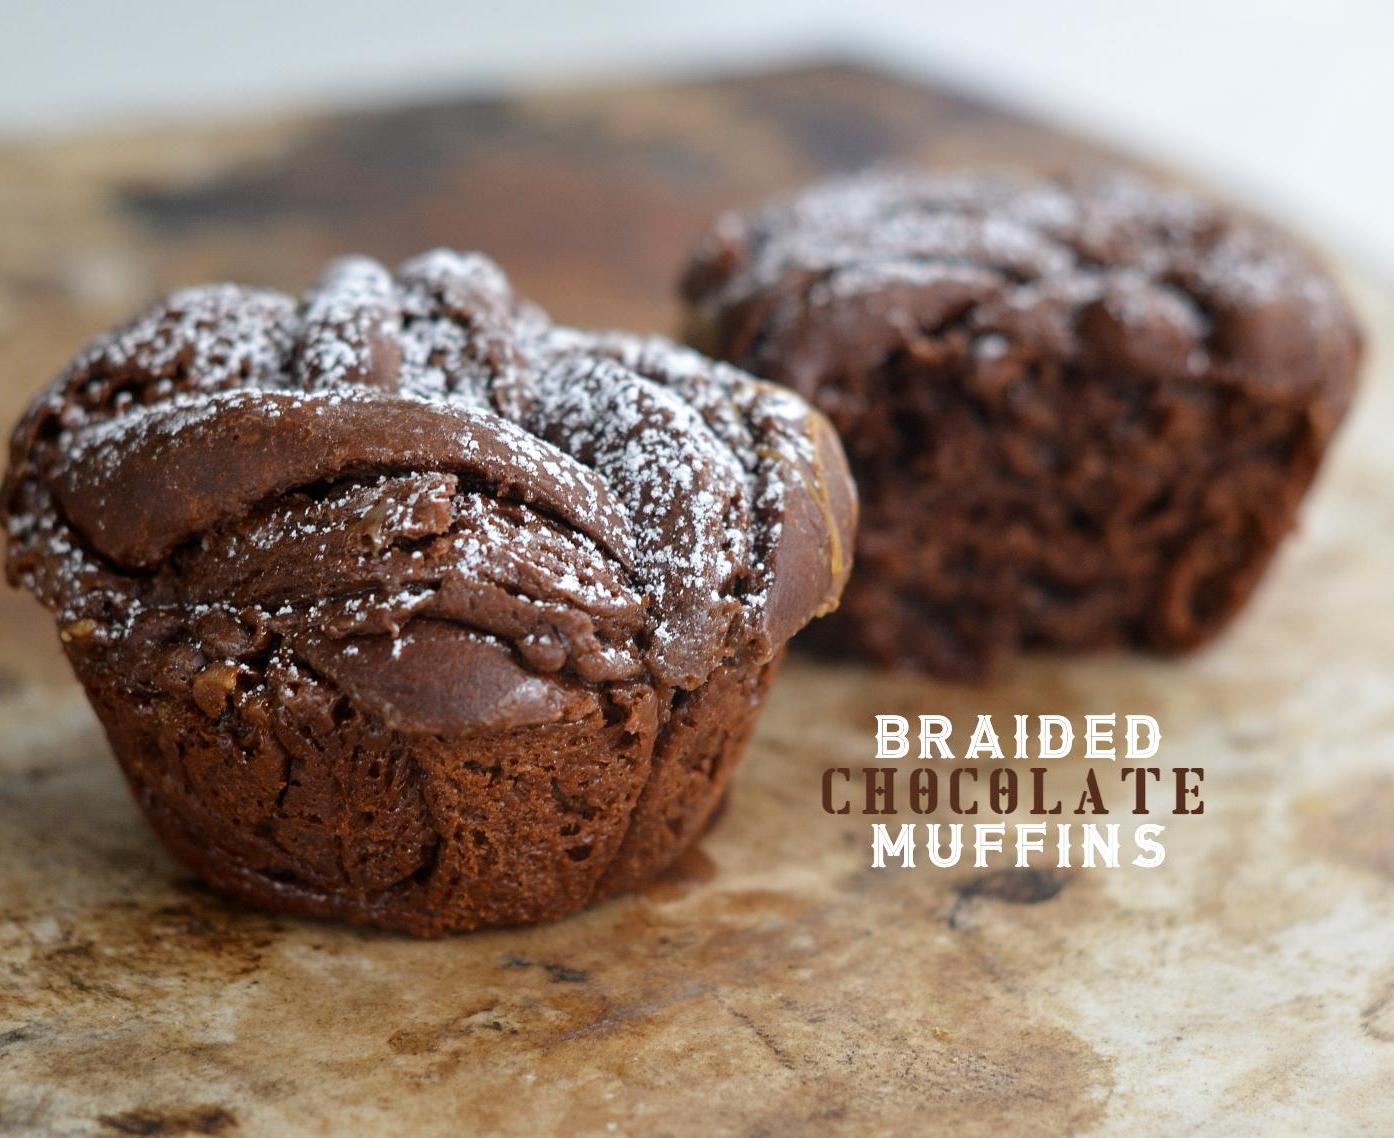 Braided Chocolate Muffins